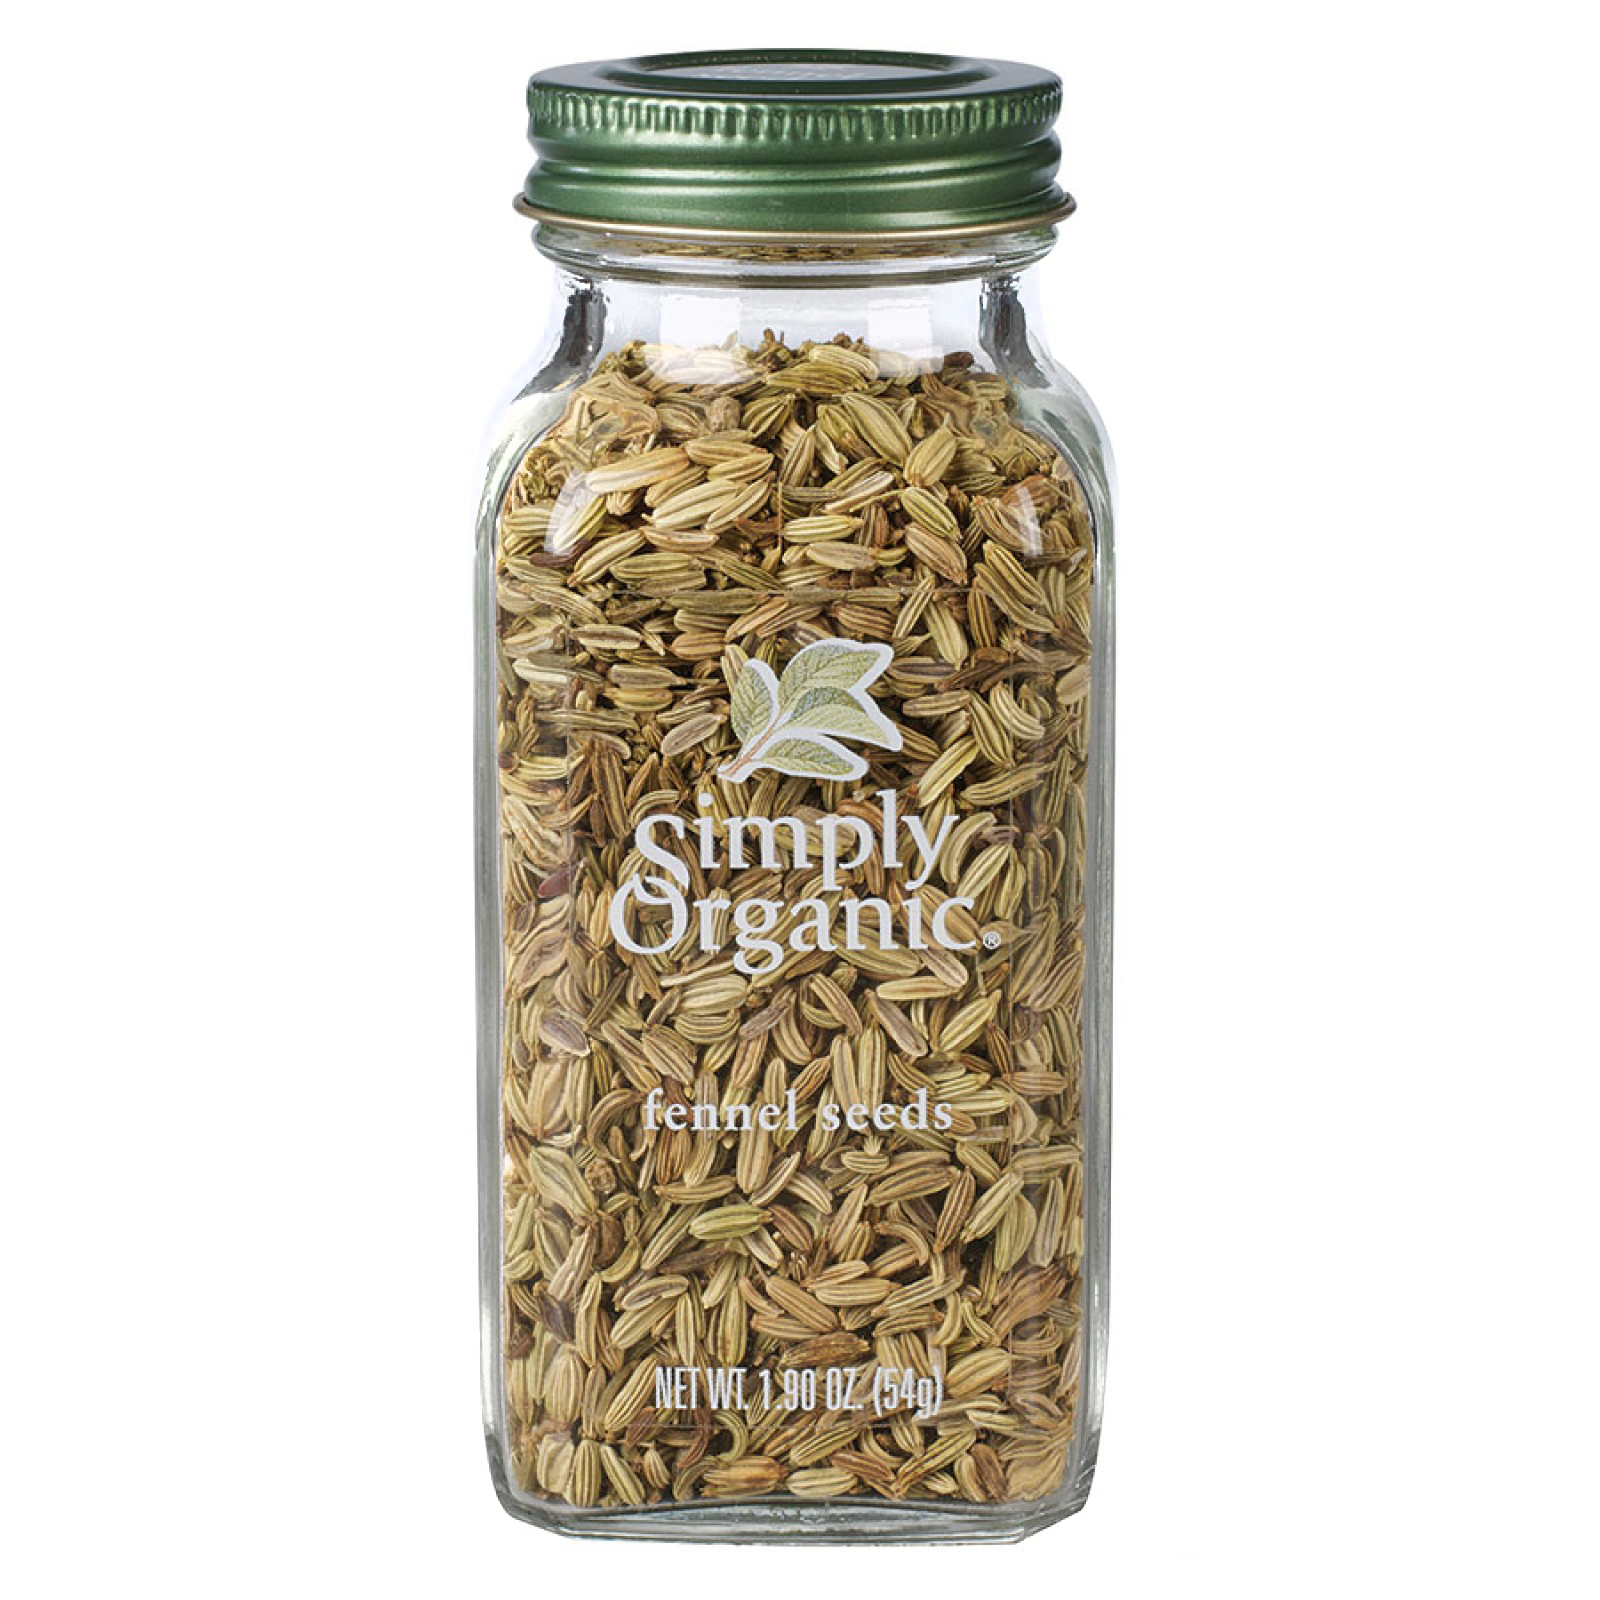 SIMPLY ORGANIC - SEASONING - (Fennel Seeds) - 1.90oz